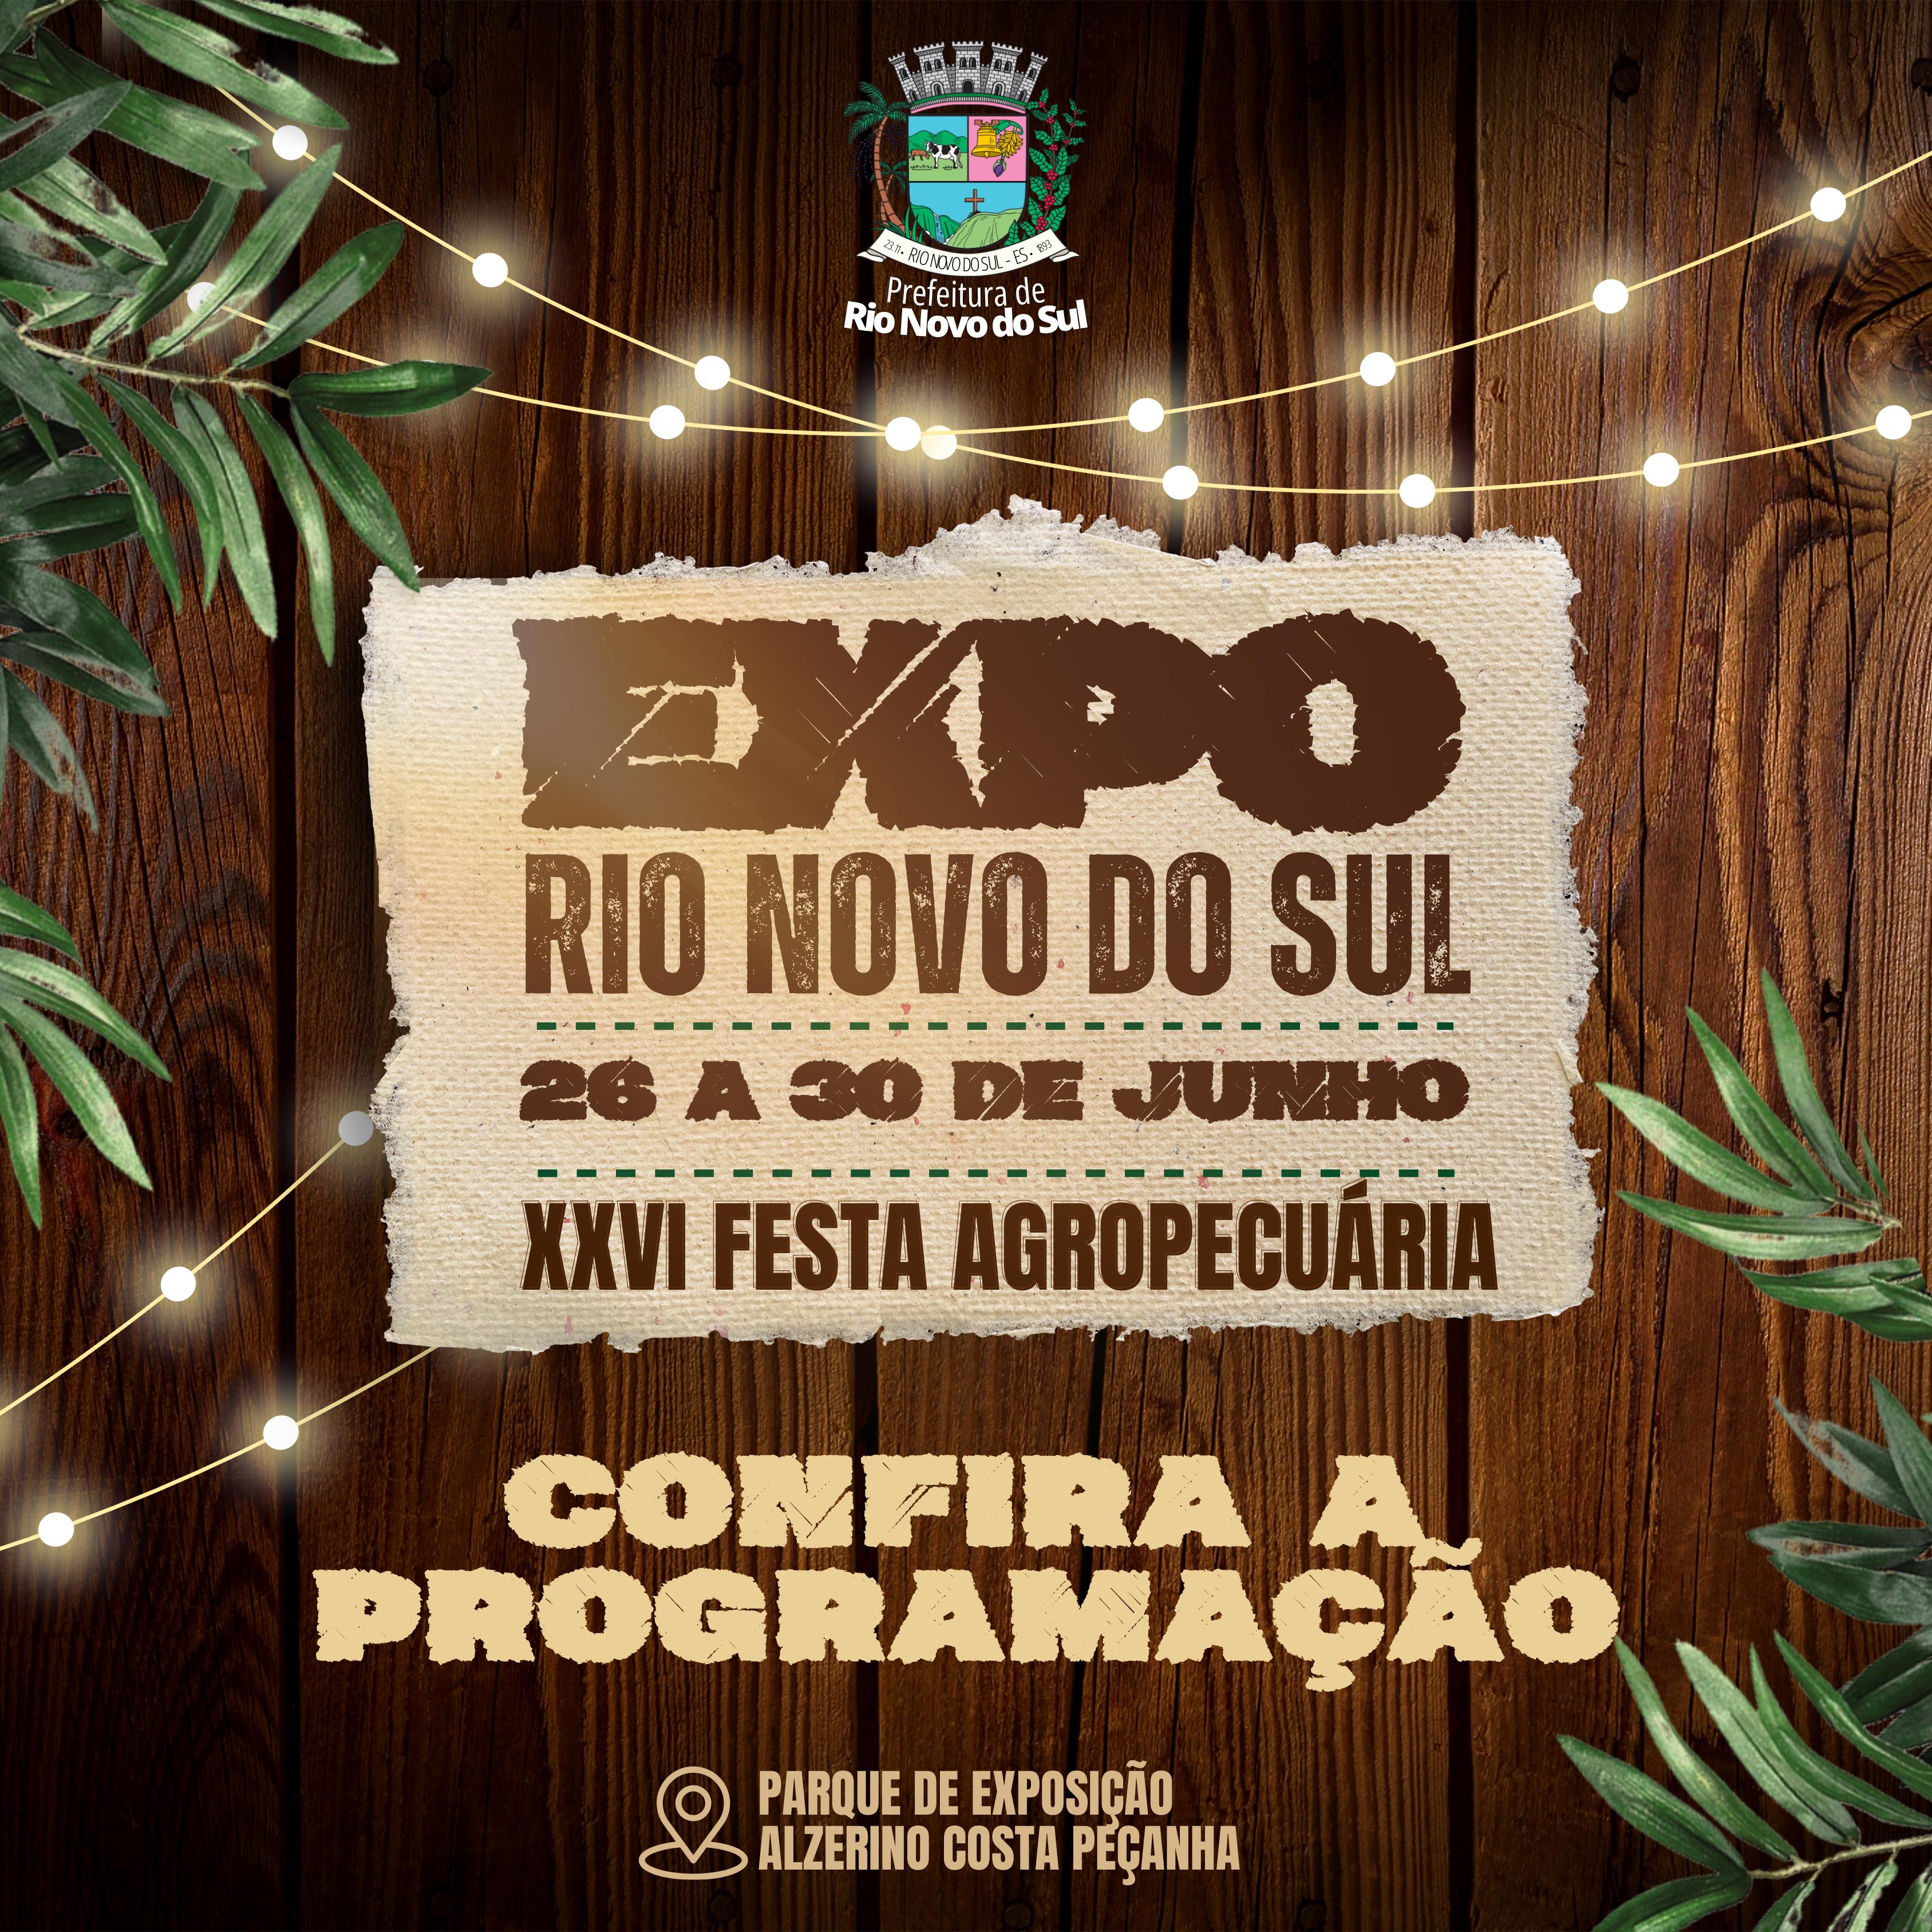 NOTÍCIA: Confira a programação da Festa Agropoecuária de Rio Novo do Sul, de 26 a 30 de junho